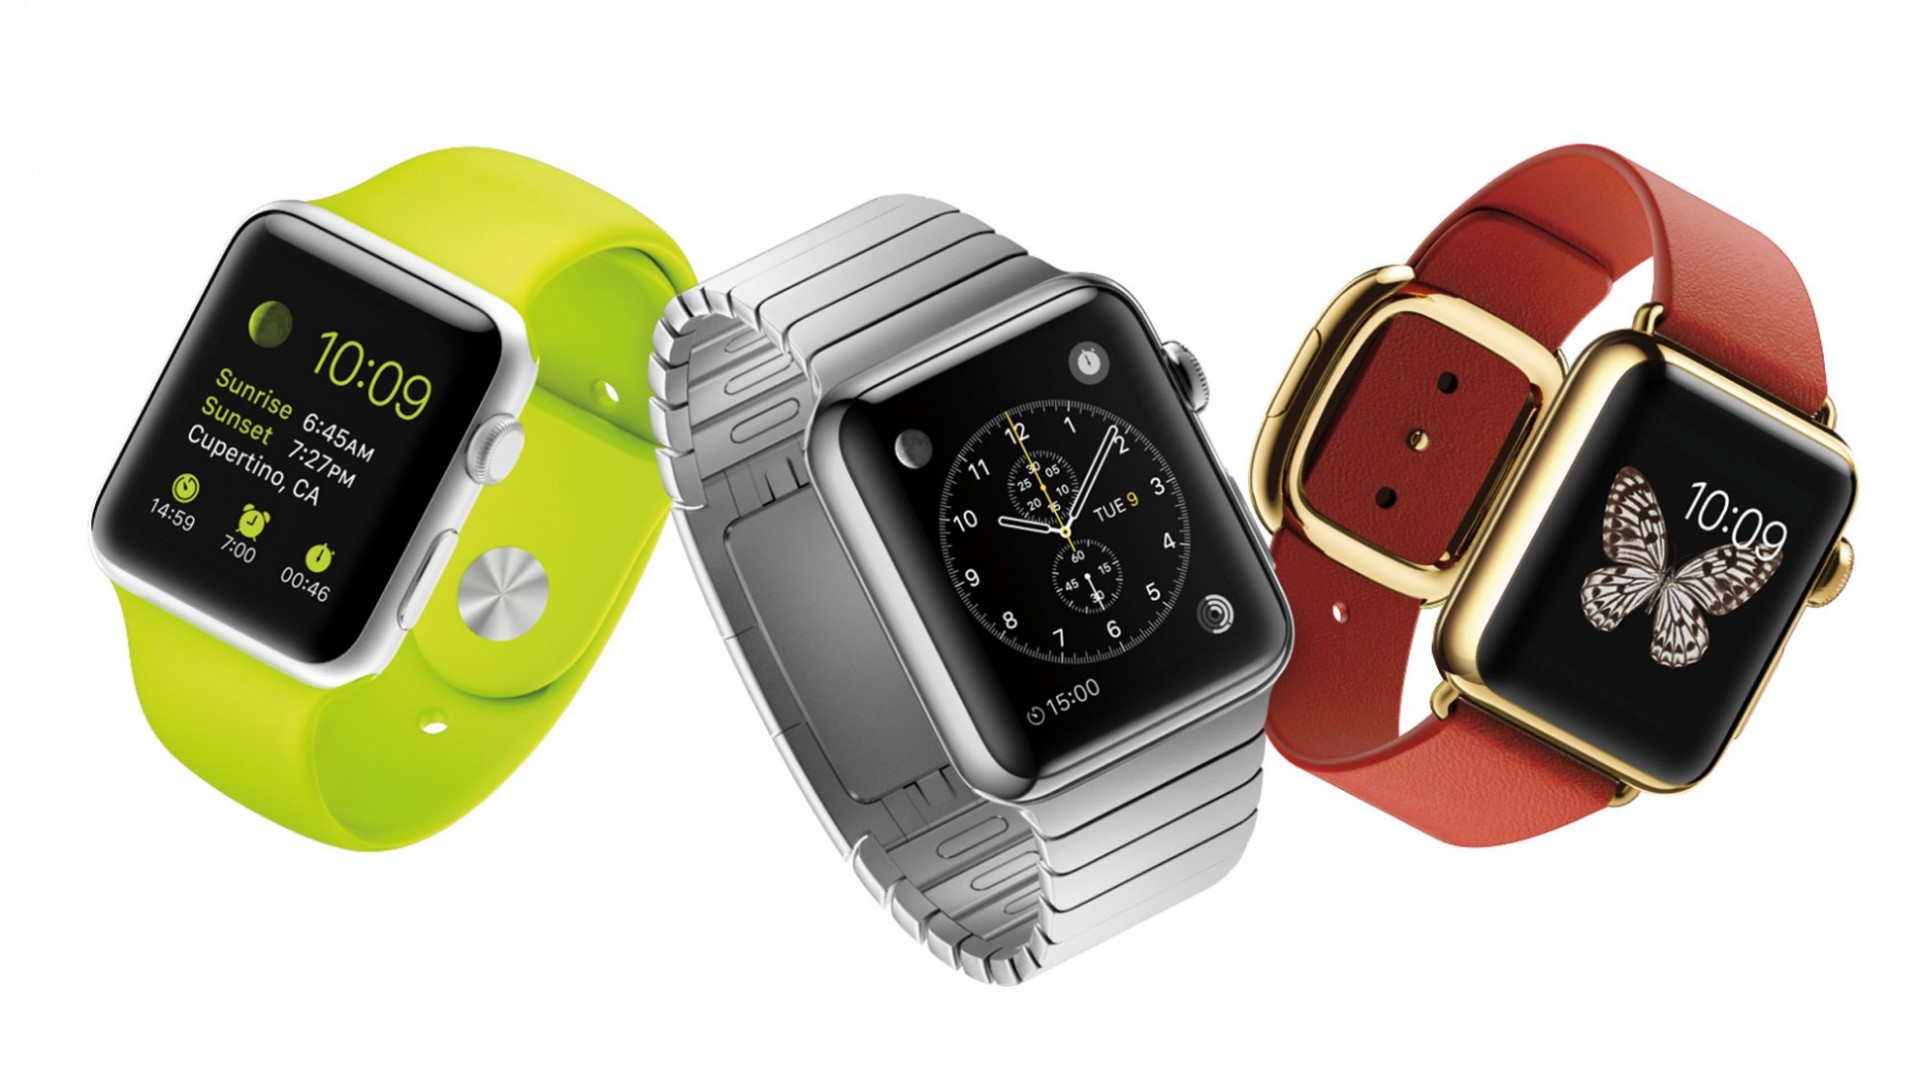 ผลสำรวจชี้ Apple ก้าวมาเป็นผู้ผลิตอุปกรณ์ wearable อันดับ 2 รองจาก Fitbit แล้ว